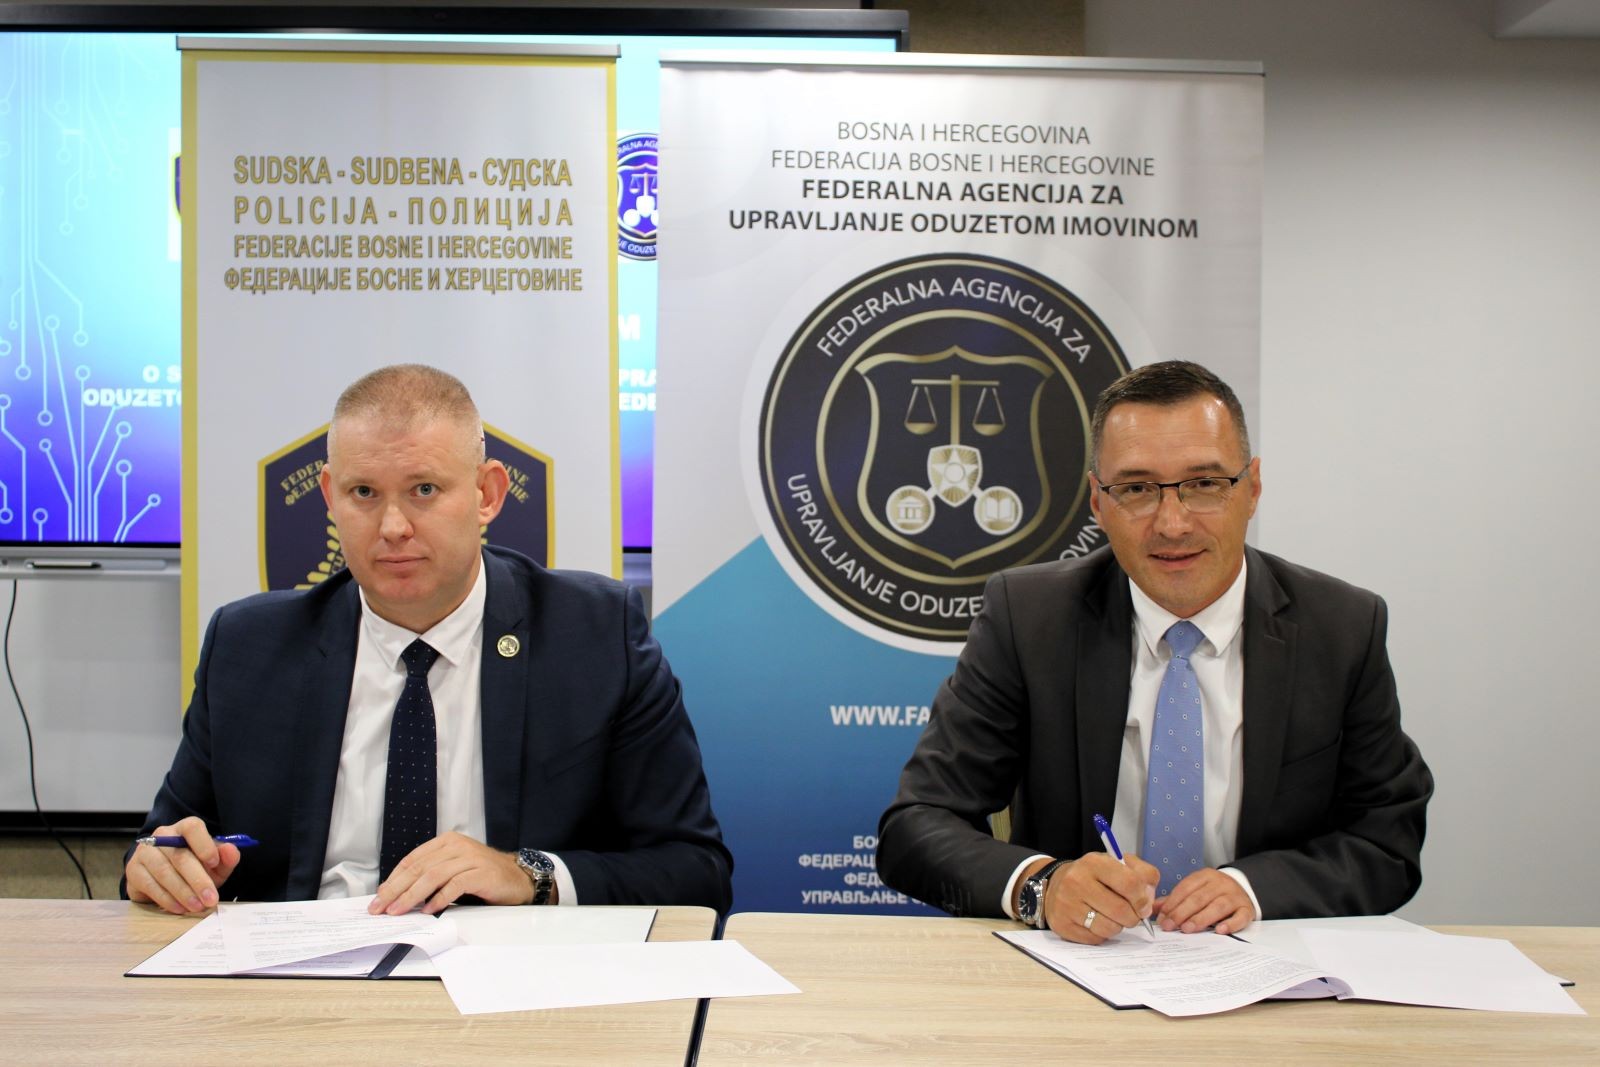 Potpisan Sporazum o saradnji Federalne agencija za upravljanje oduzetom imovinom i Sudske policije u FBiH